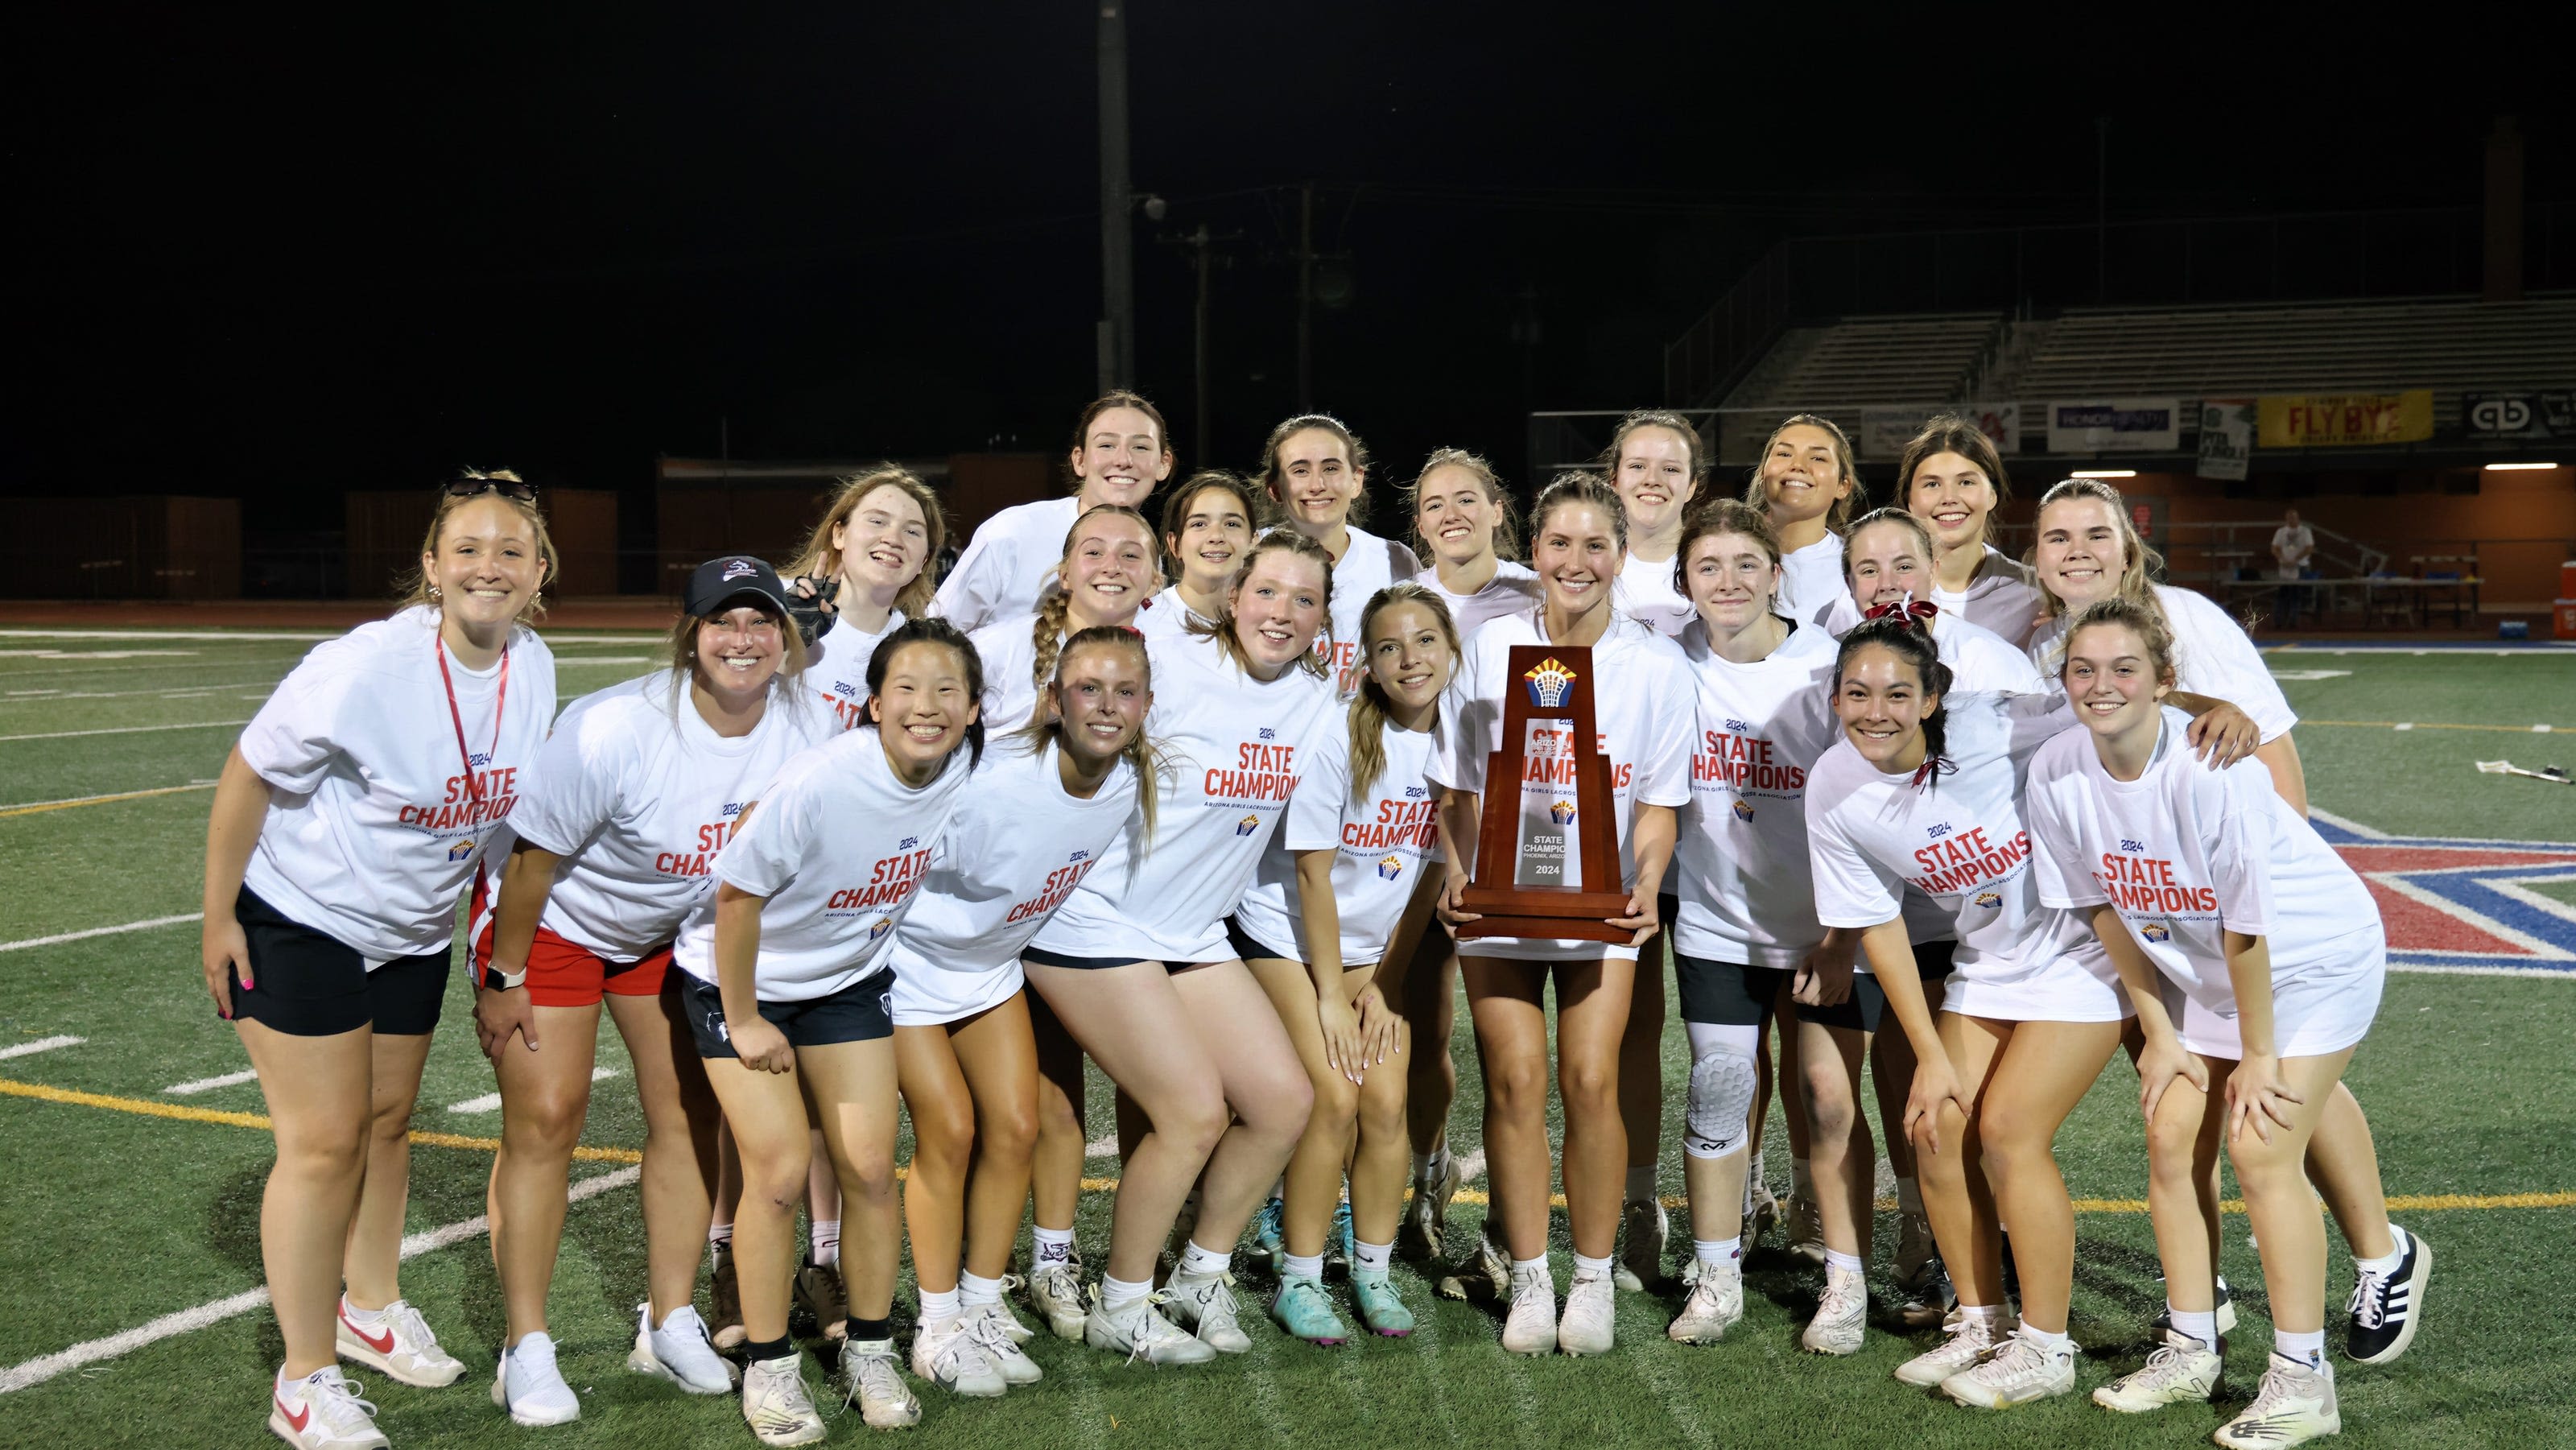 Chandler Huskies girls high school lacrosse team wins state title